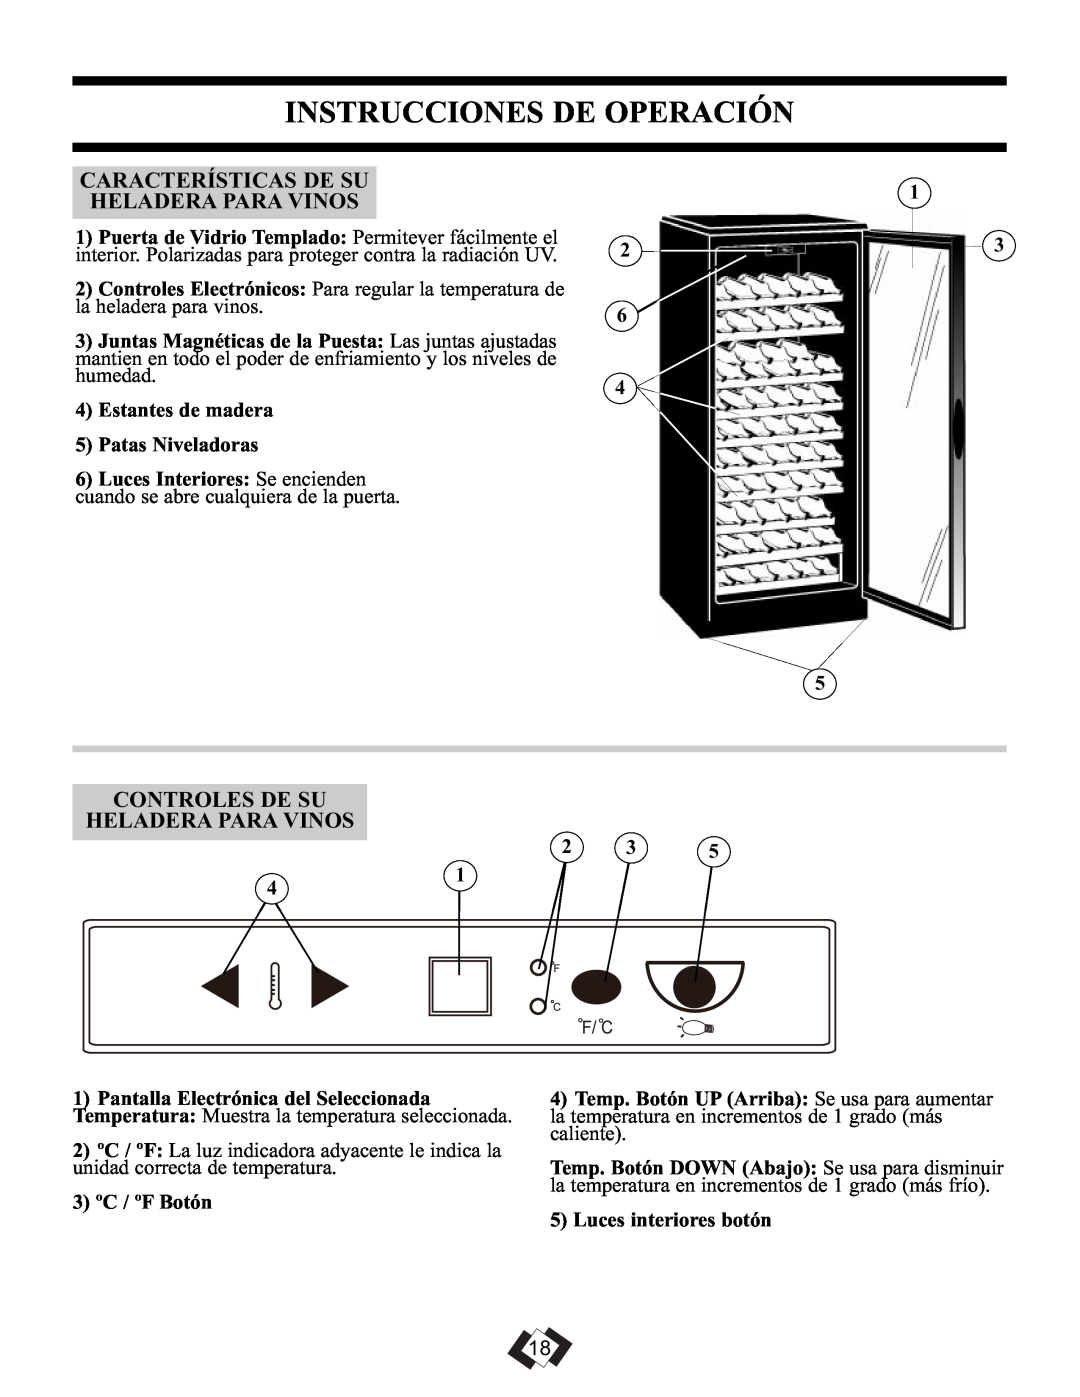 Danby DWC106A1BPDD Instrucciones De Operación, Características De Su Heladera Para Vinos, Luces Interiores Se encienden 